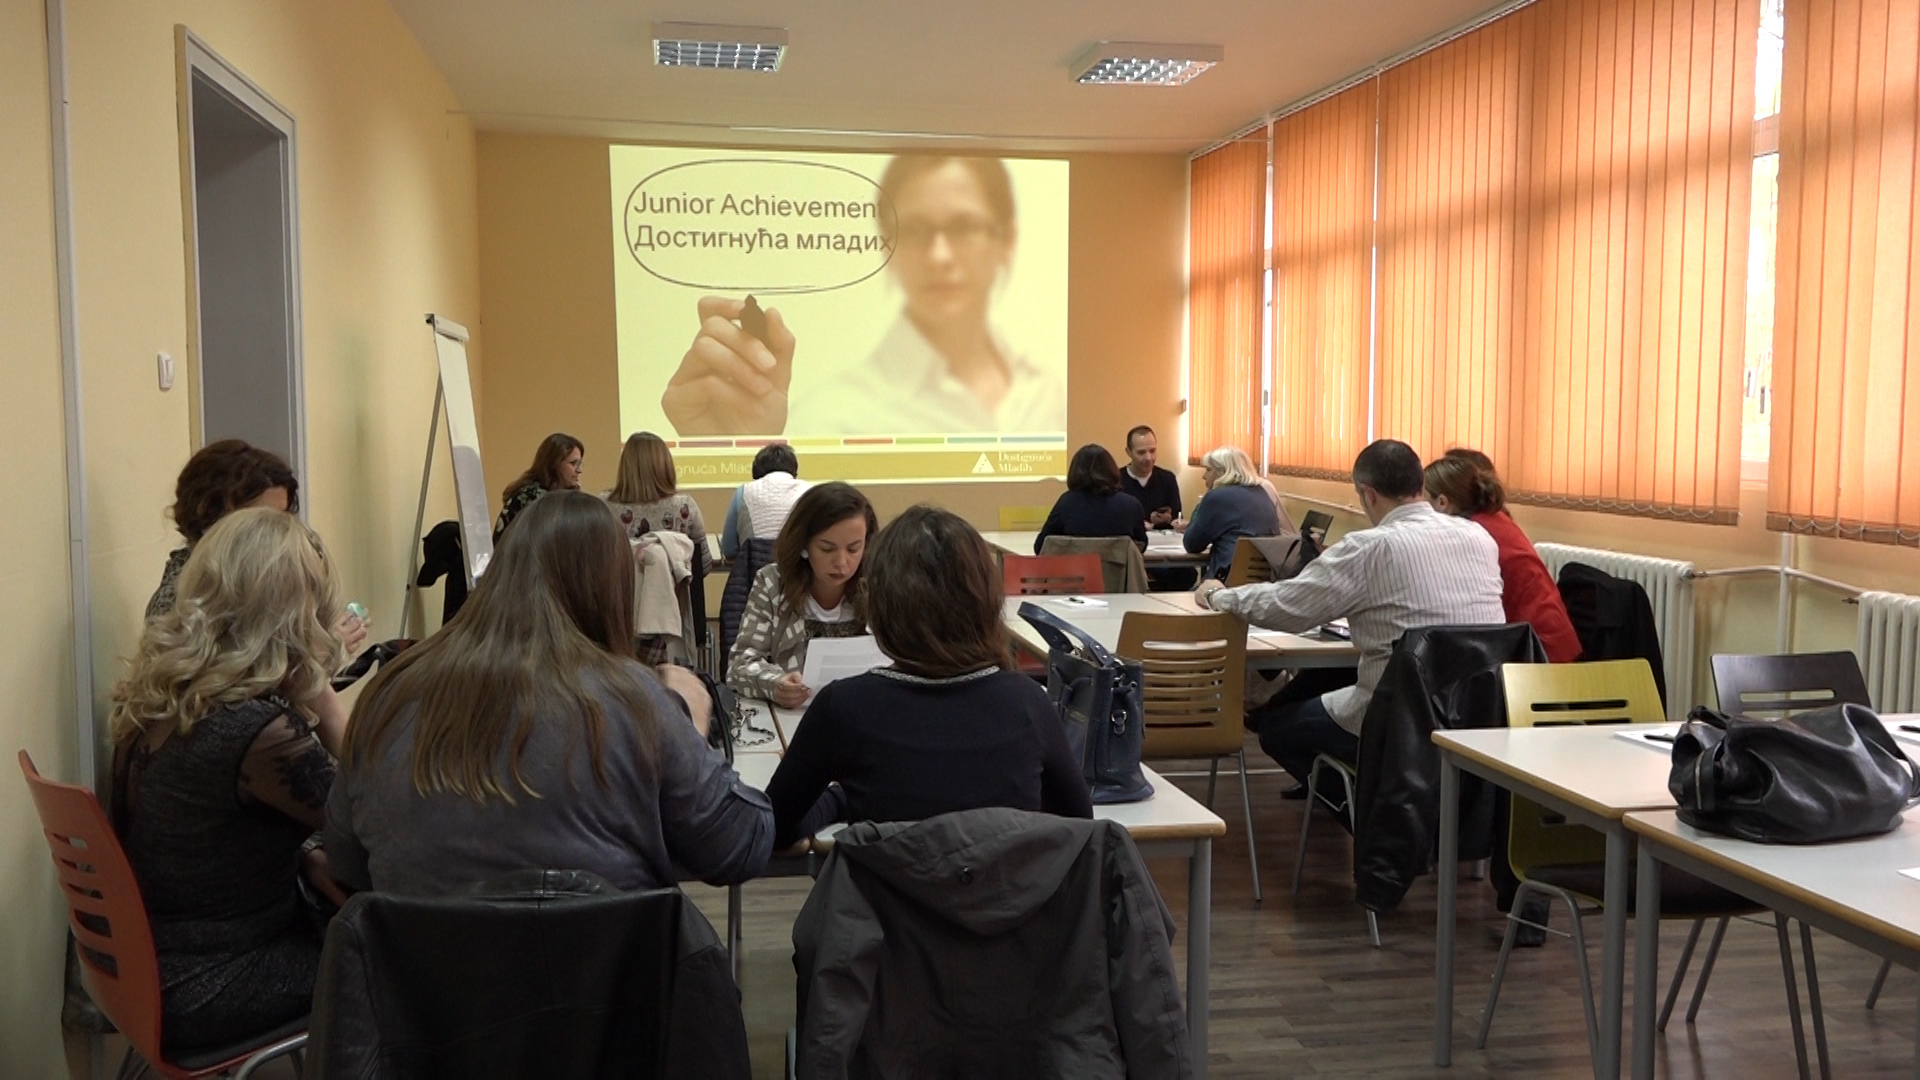 Obuka Dostignuća mladih u Srbiji u Tehnološkoj školi